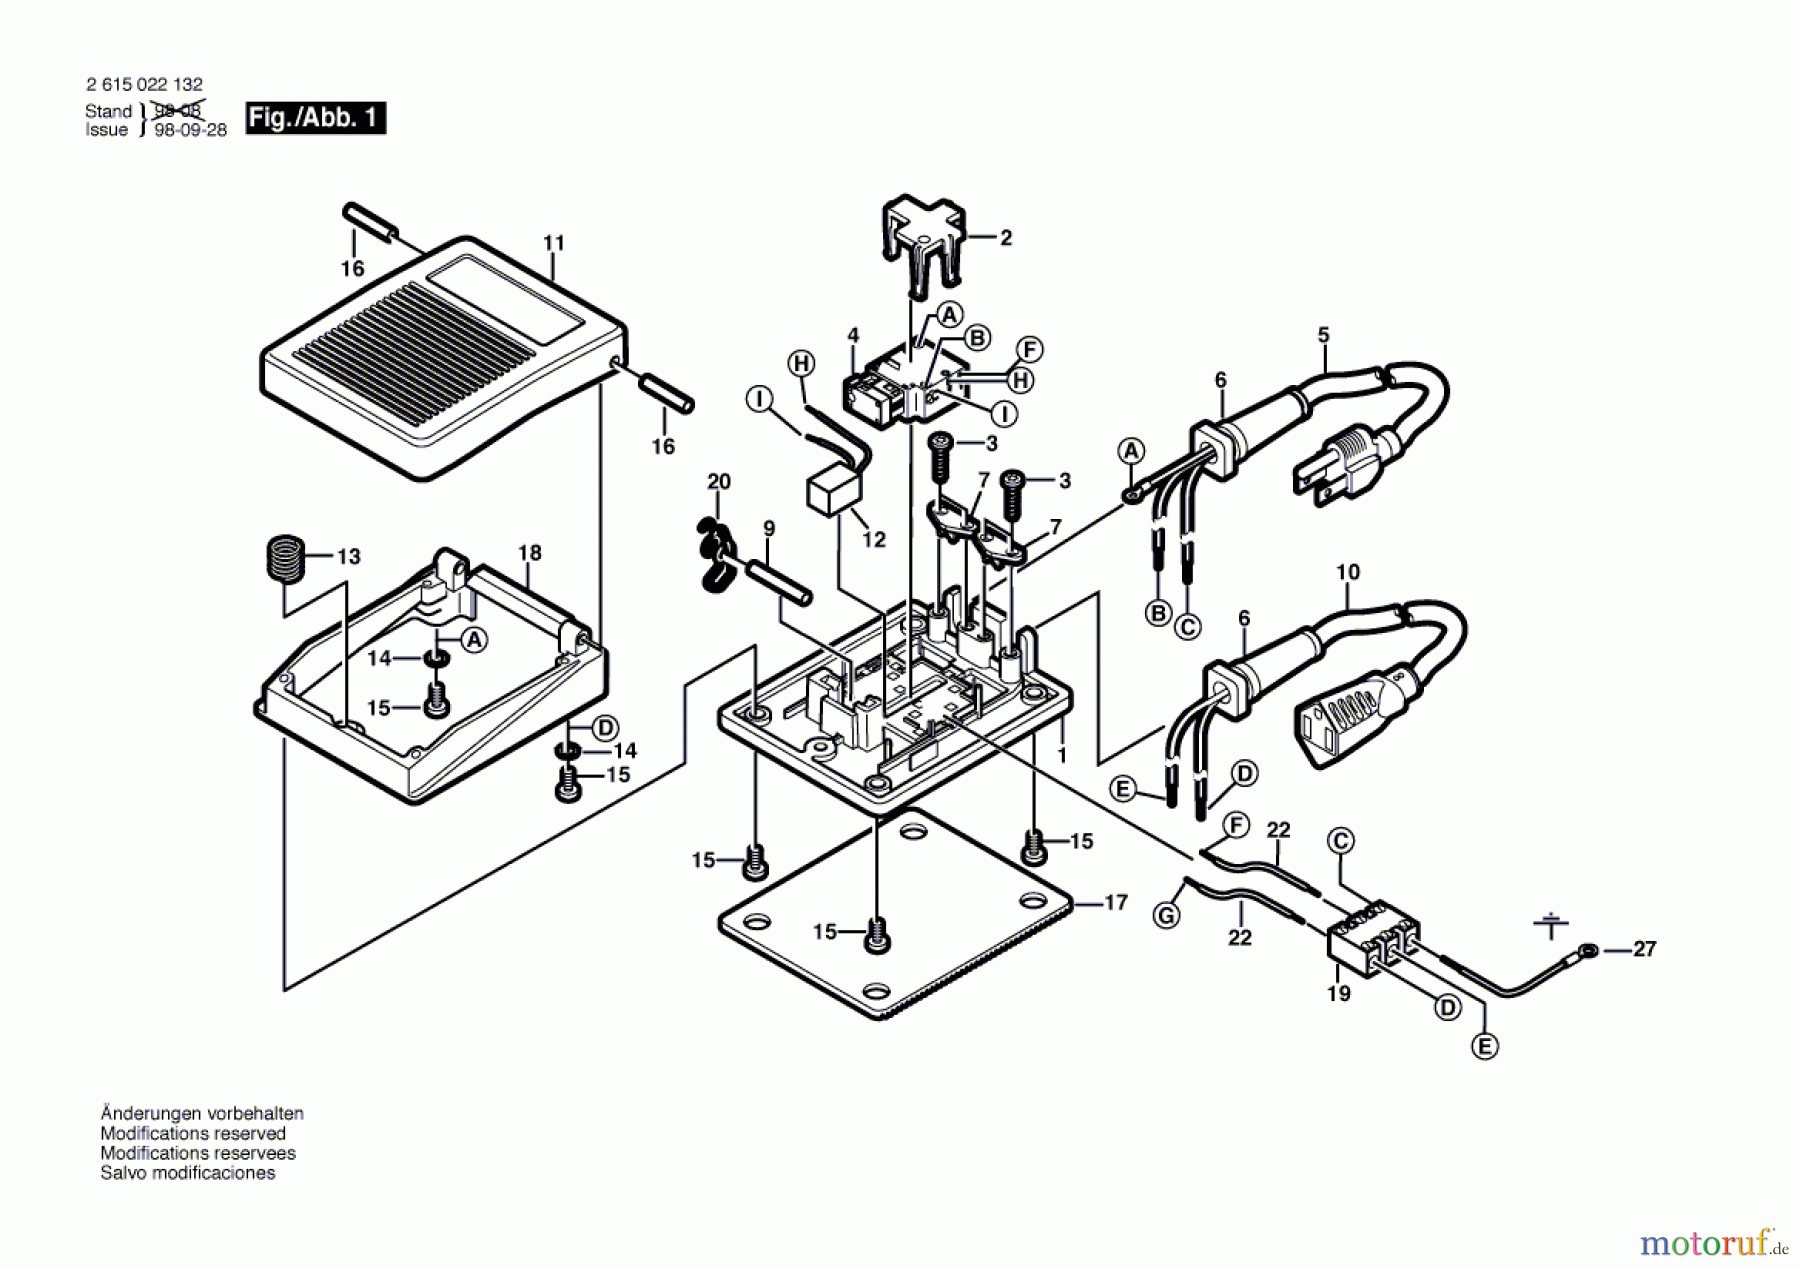  Bosch Werkzeug Bauteil ---- Seite 1